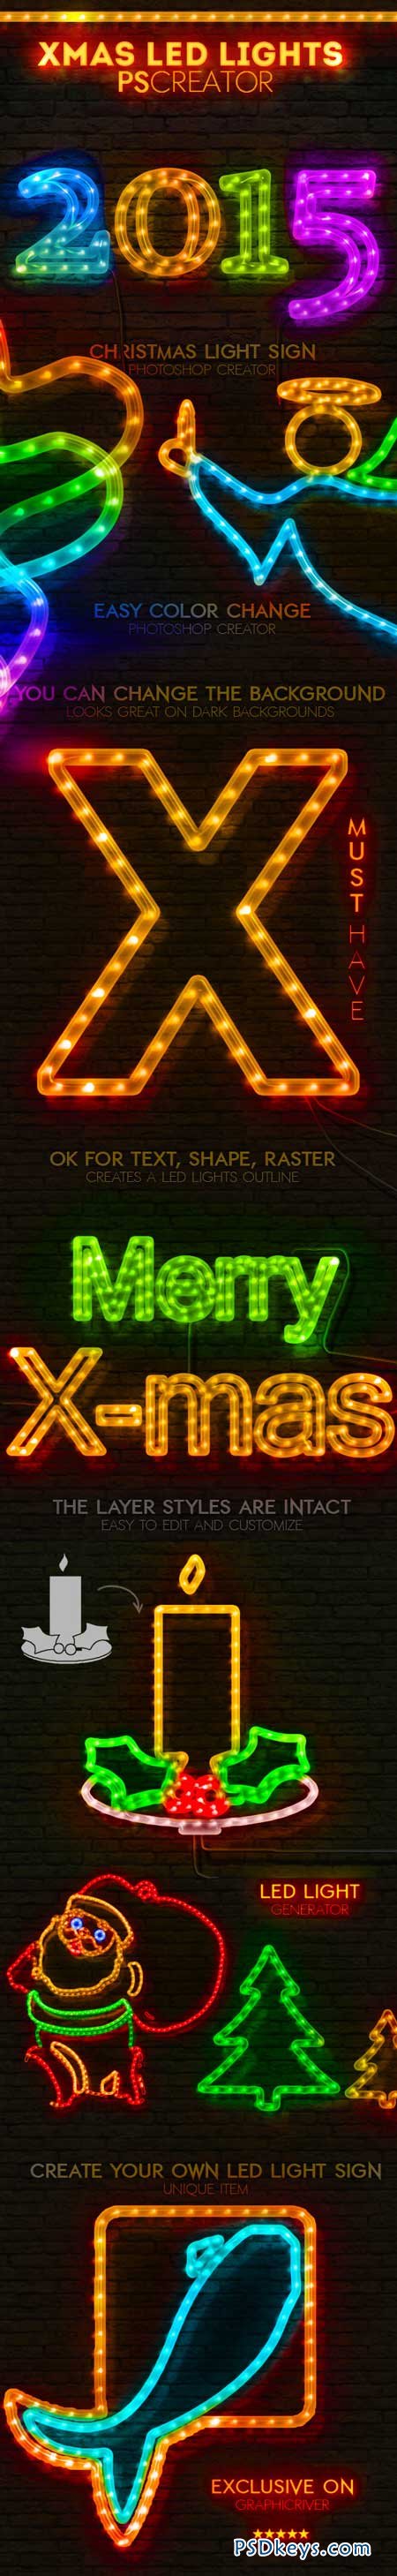 Christmas LED Light Rope Photoshop Action 9475071